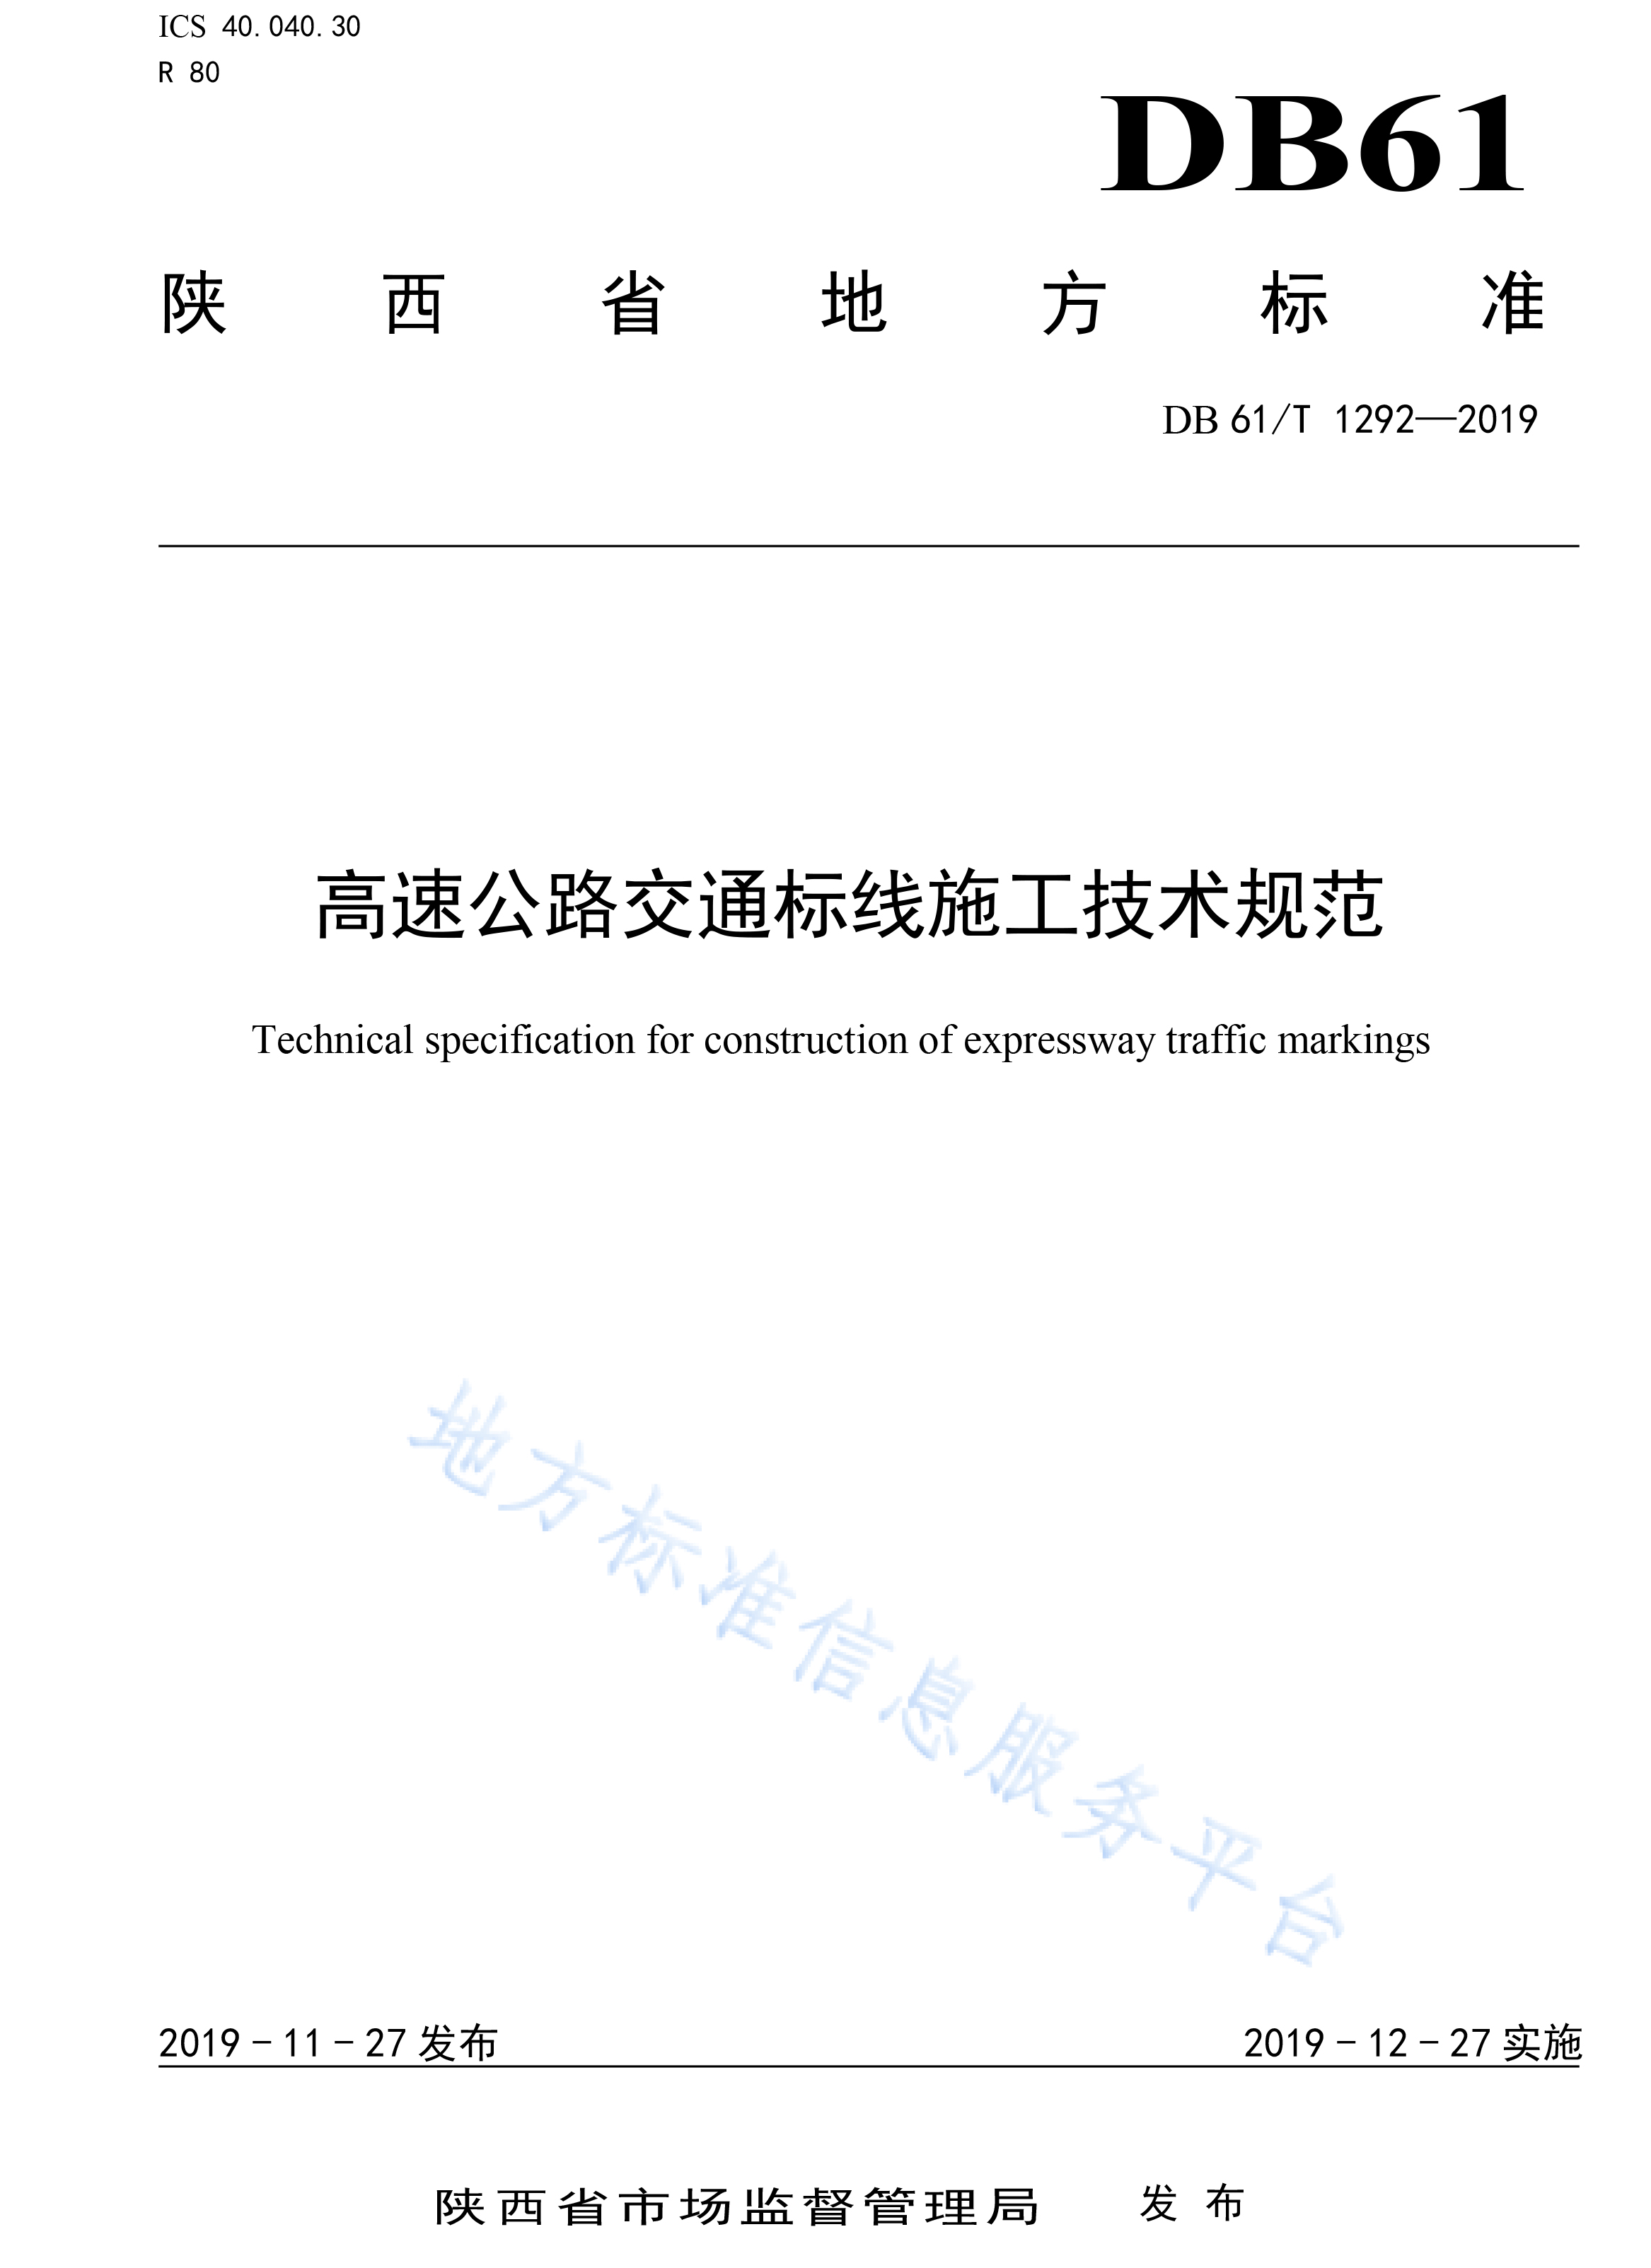 陕西DB61T 1292—2019高速公路交通标线施工技术规范-1.jpg